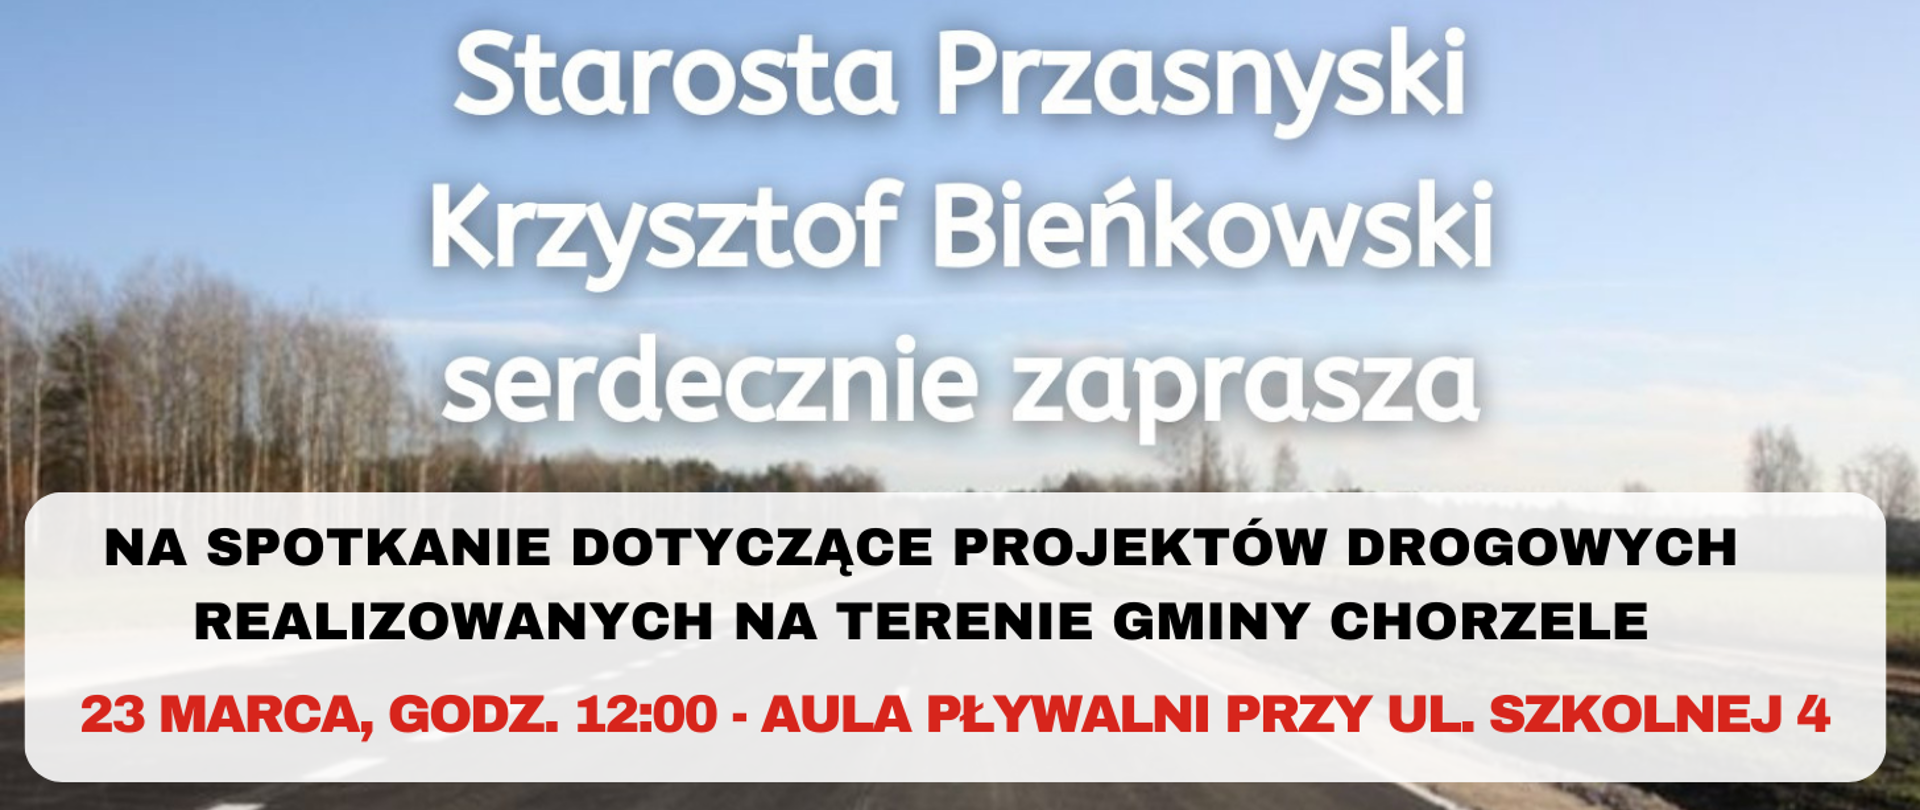 Grafika informująca o spotkaniu Starosty Przasnyskiego w Chorzelach. Treść w artykule.